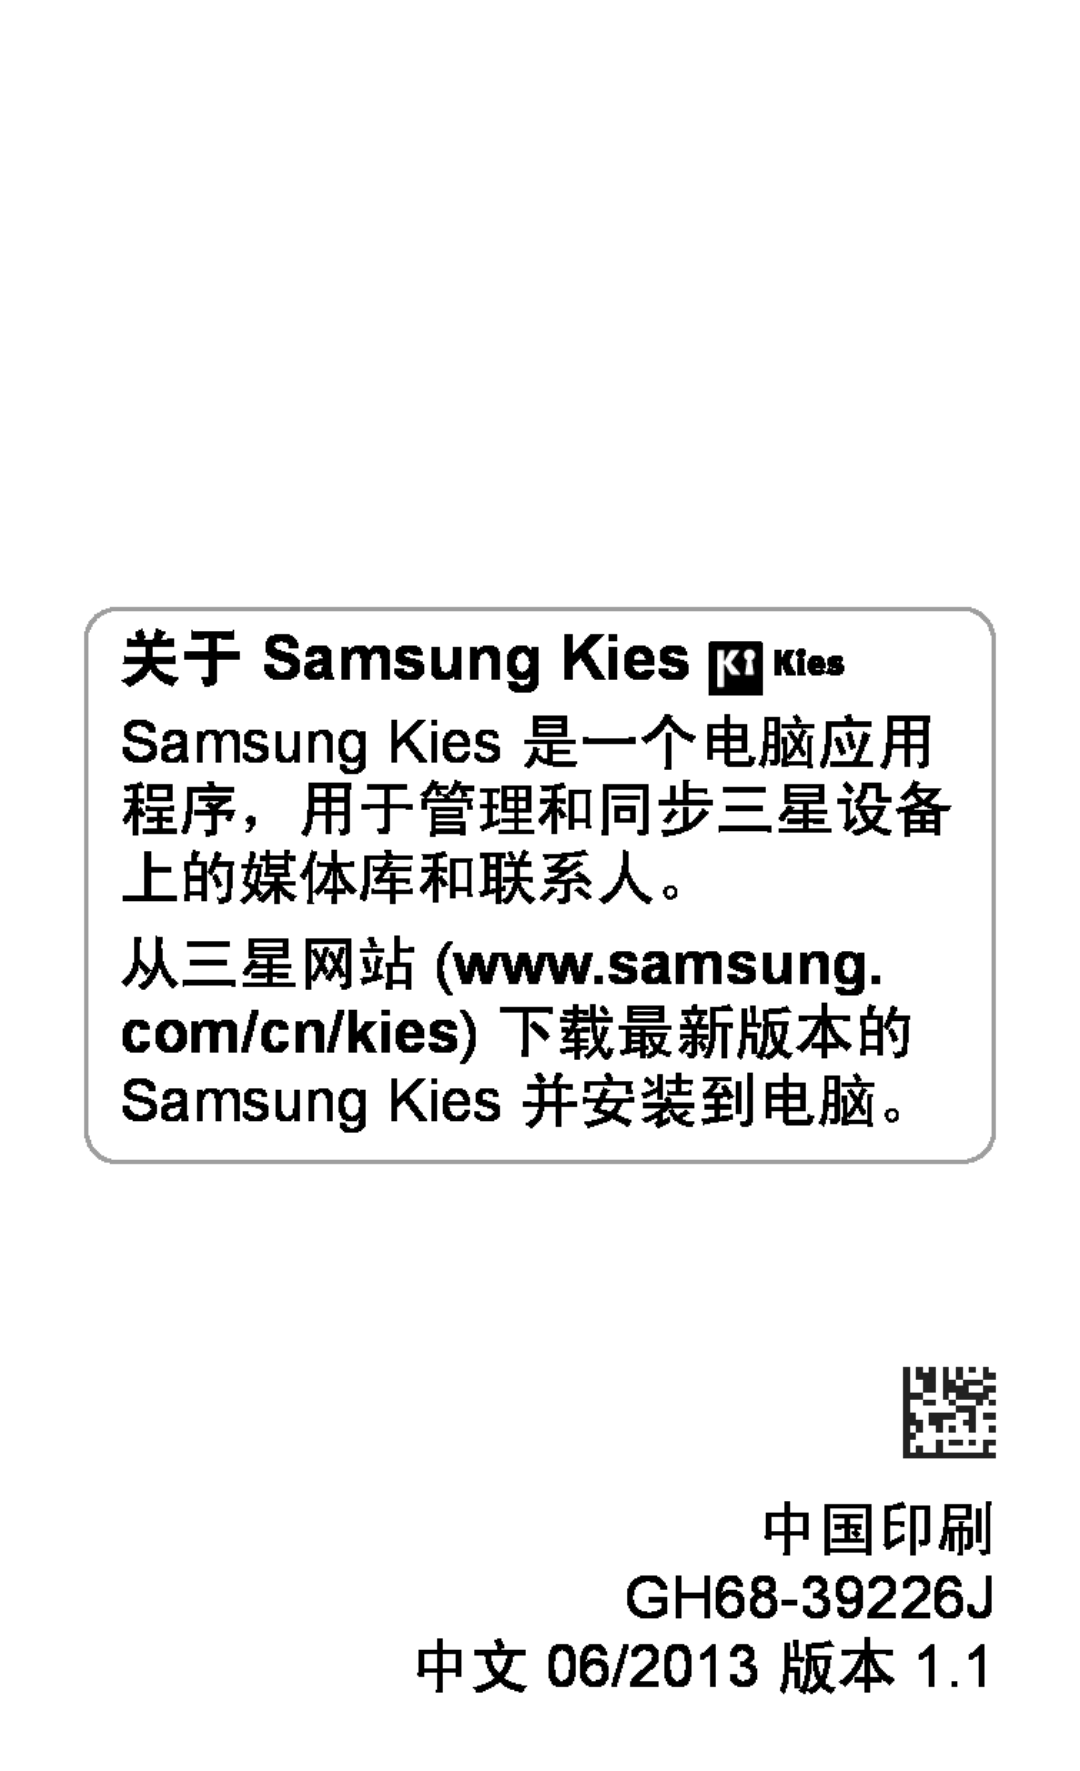 Samsung GT-P5200MKAXEZ Samsung Kies 是一个电脑应用 程序，用于管理和同步三星设备 上的媒体库和联系人。, 中国印刷 GH68-39226J 中文 06/2013 版本, 关于 Samsung Kies 